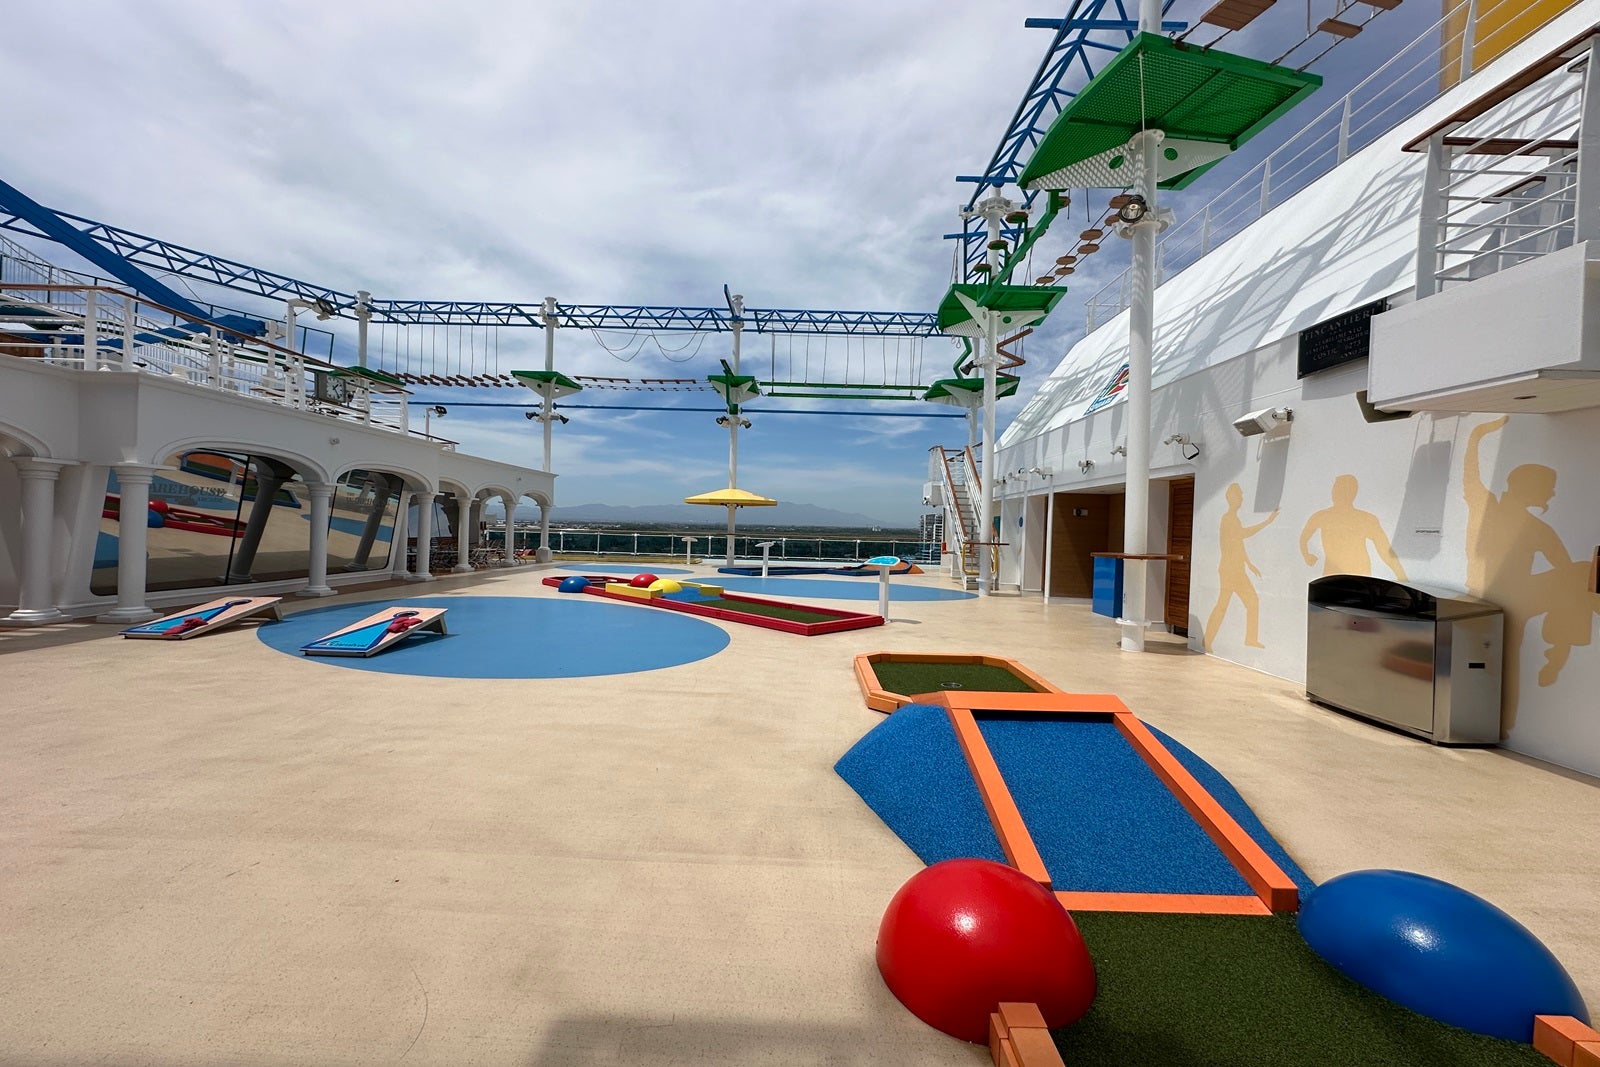 docked cruise ship hotel